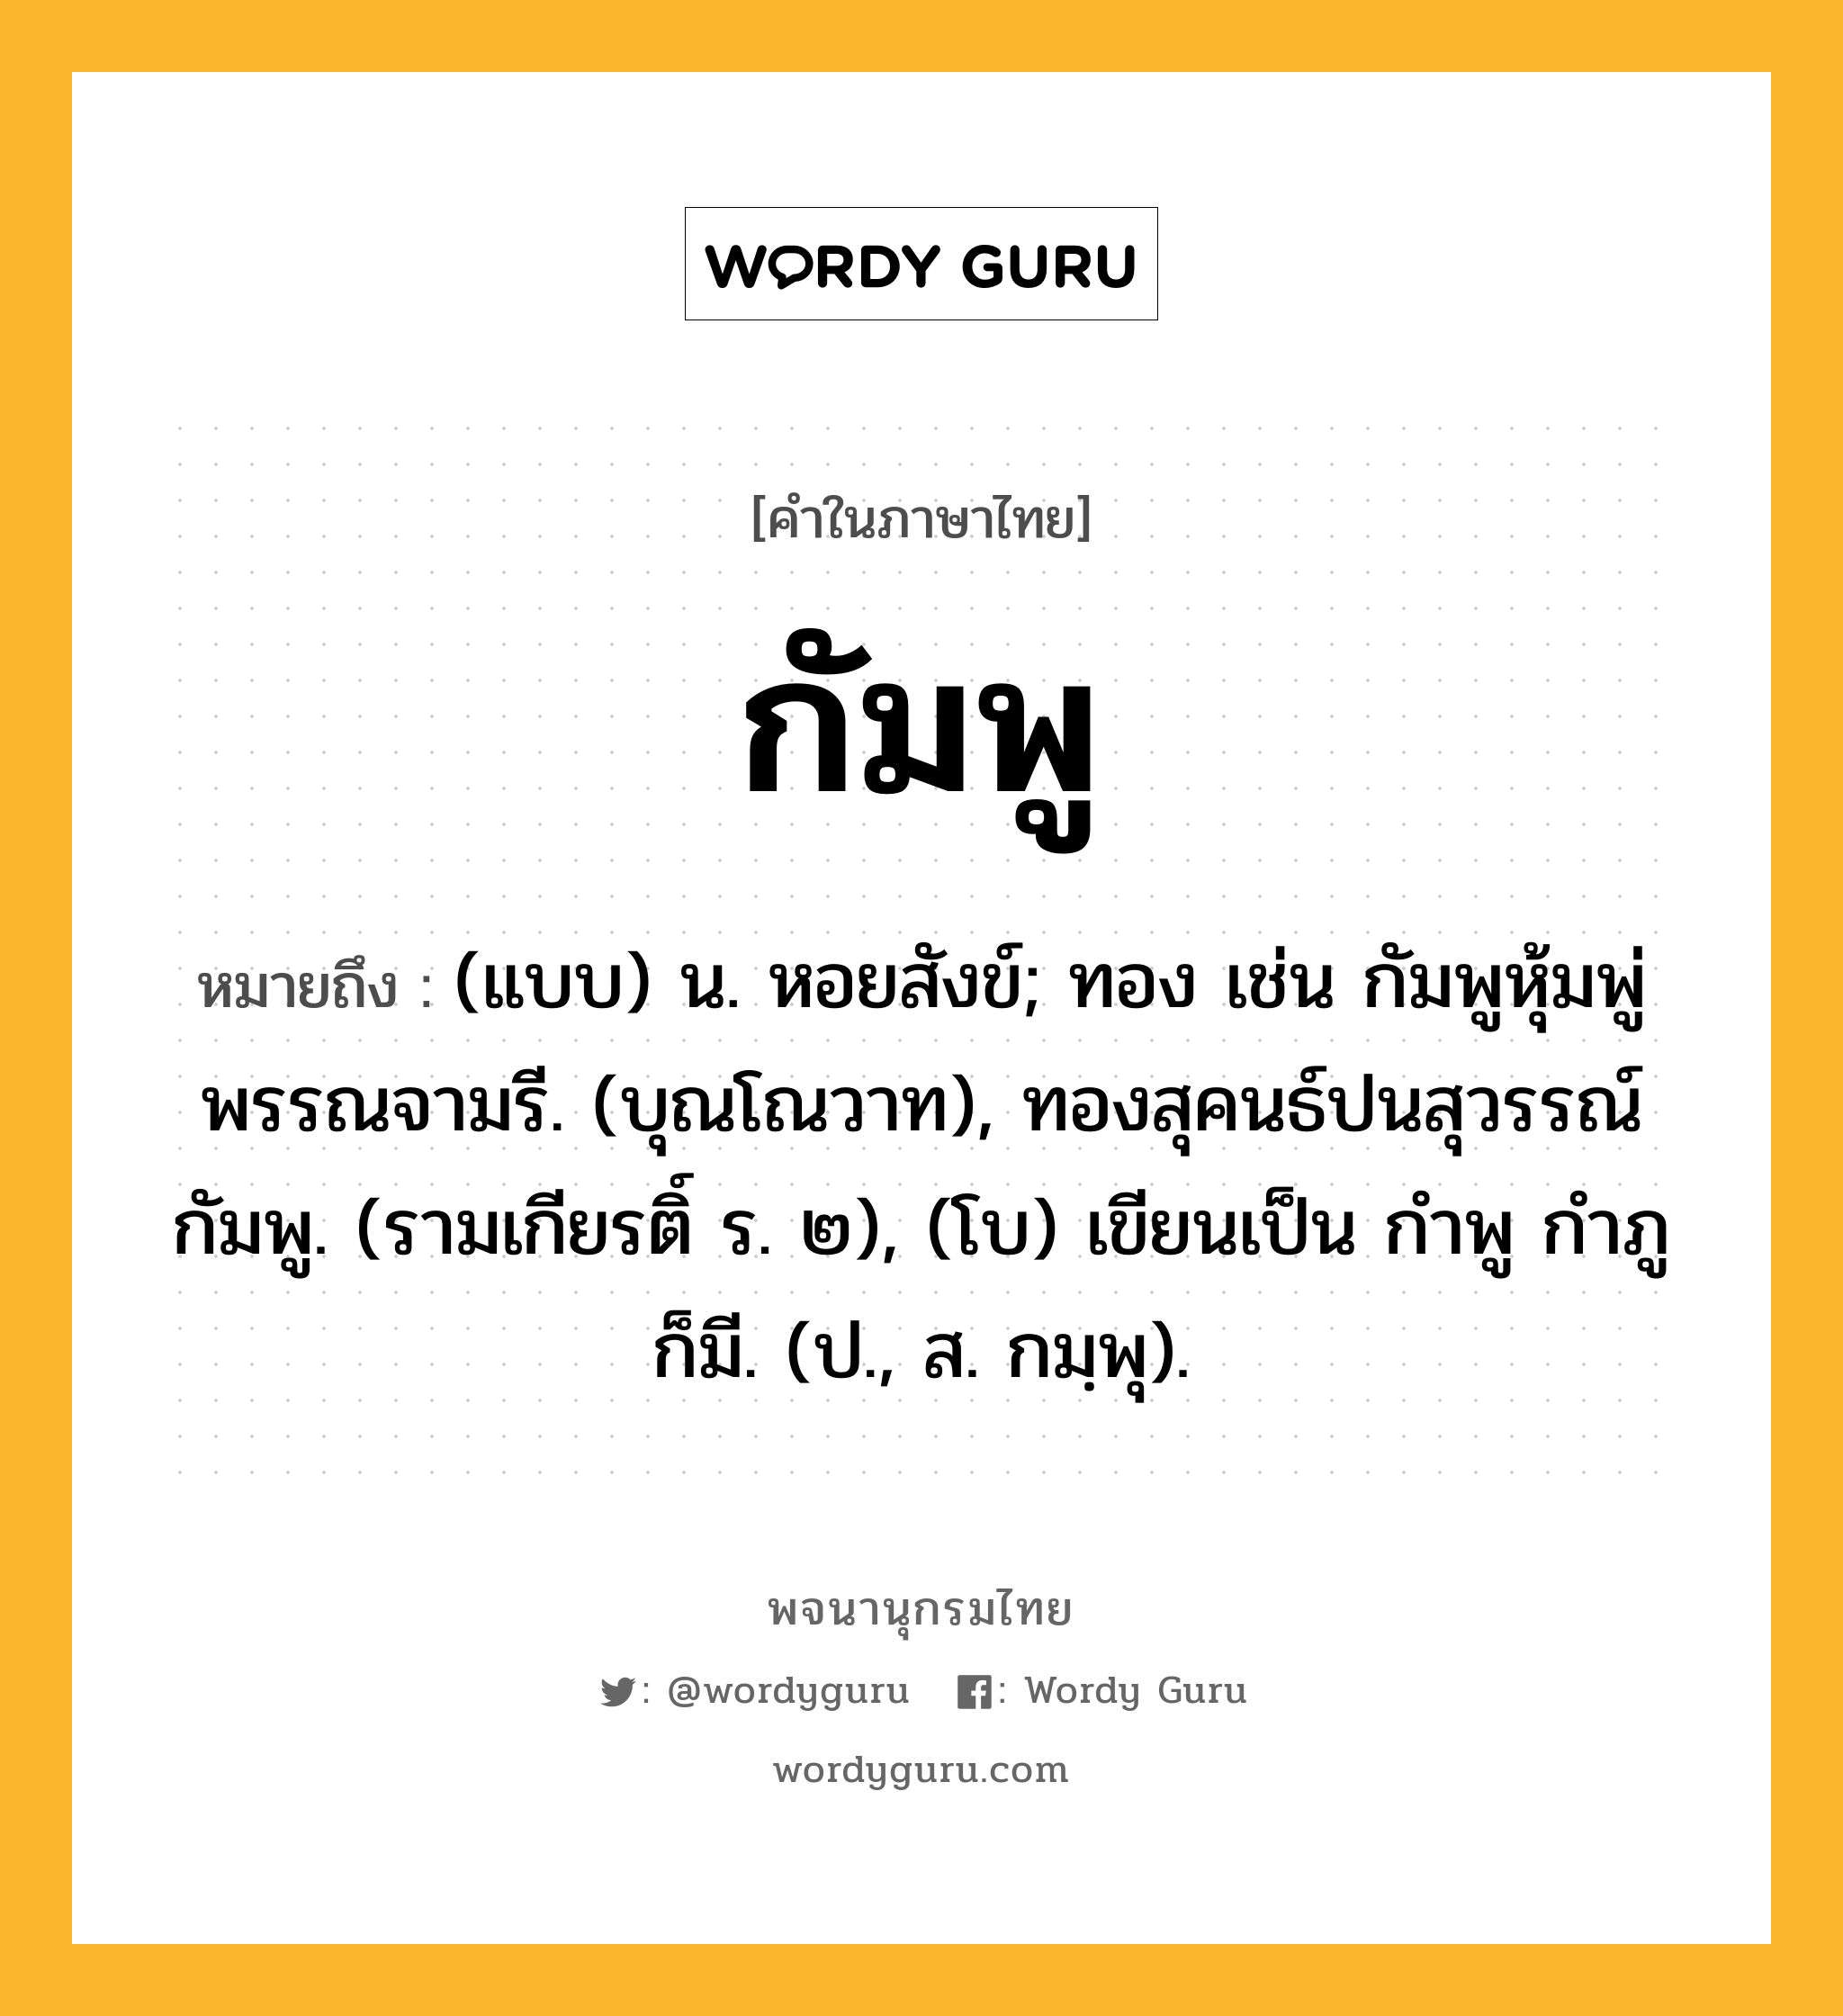 กัมพู ความหมาย หมายถึงอะไร?, คำในภาษาไทย กัมพู หมายถึง (แบบ) น. หอยสังข์; ทอง เช่น กัมพูหุ้มพู่พรรณจามรี. (บุณโณวาท), ทองสุคนธ์ปนสุวรรณ์กัมพู. (รามเกียรติ์ ร. ๒), (โบ) เขียนเป็น กําพู กําภู ก็มี. (ป., ส. กมฺพุ).